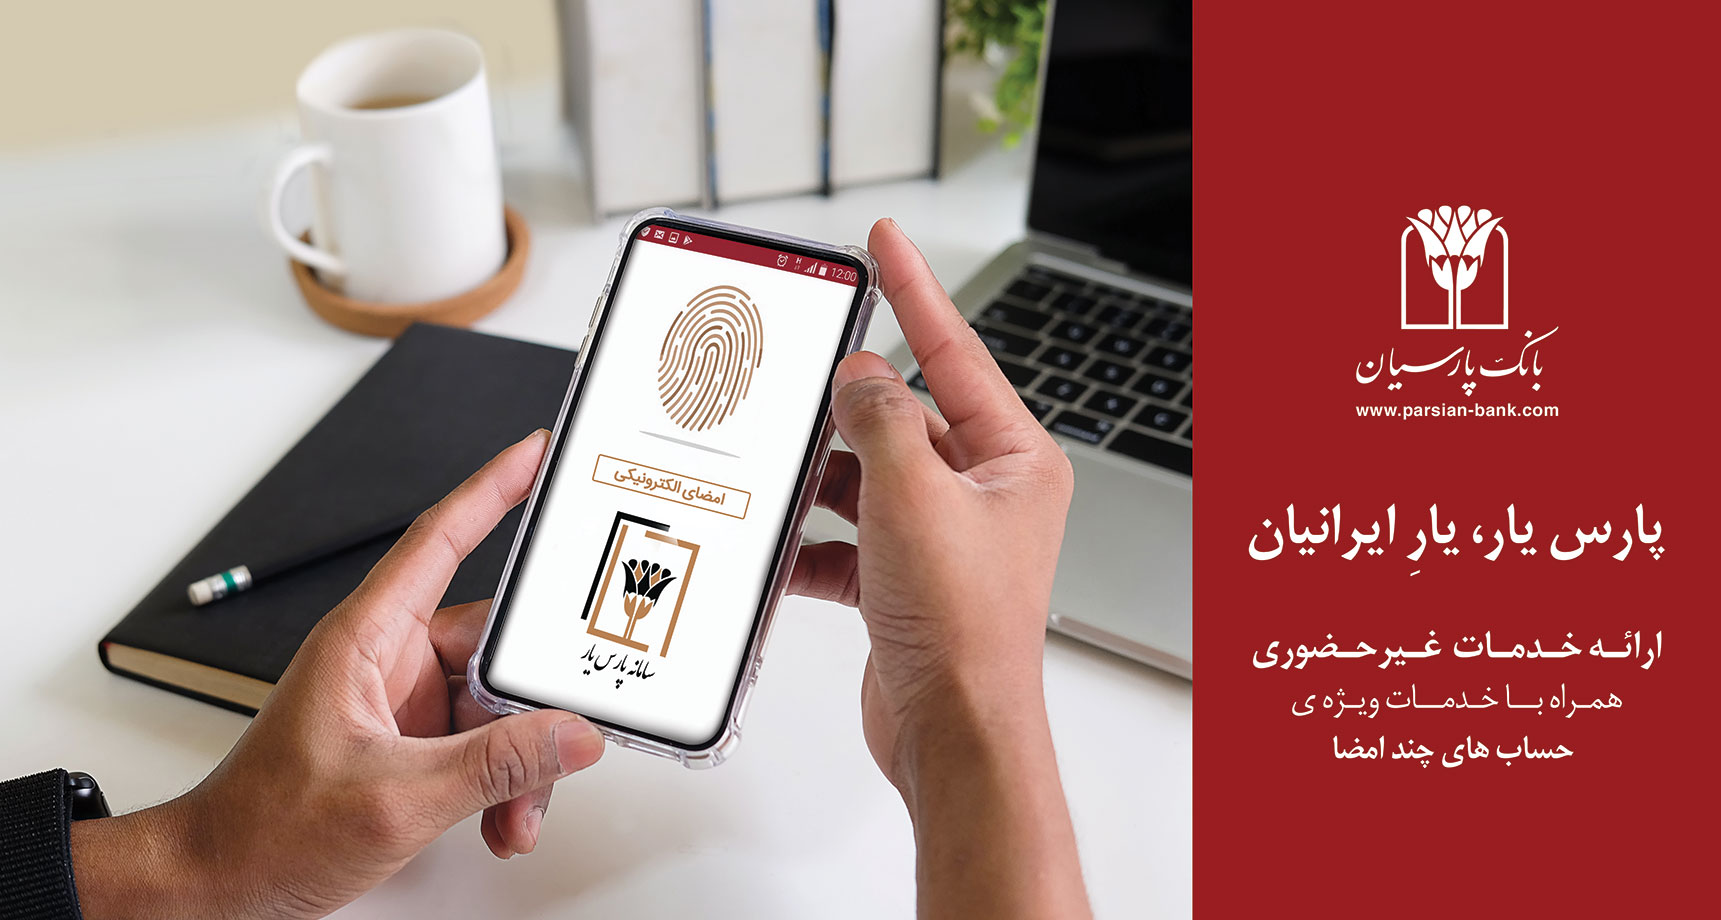 "پارس یار" خدمتی برای مشتریان ویژه راه اندازی کارپوشه الکترونیکی در بانک پارسیان